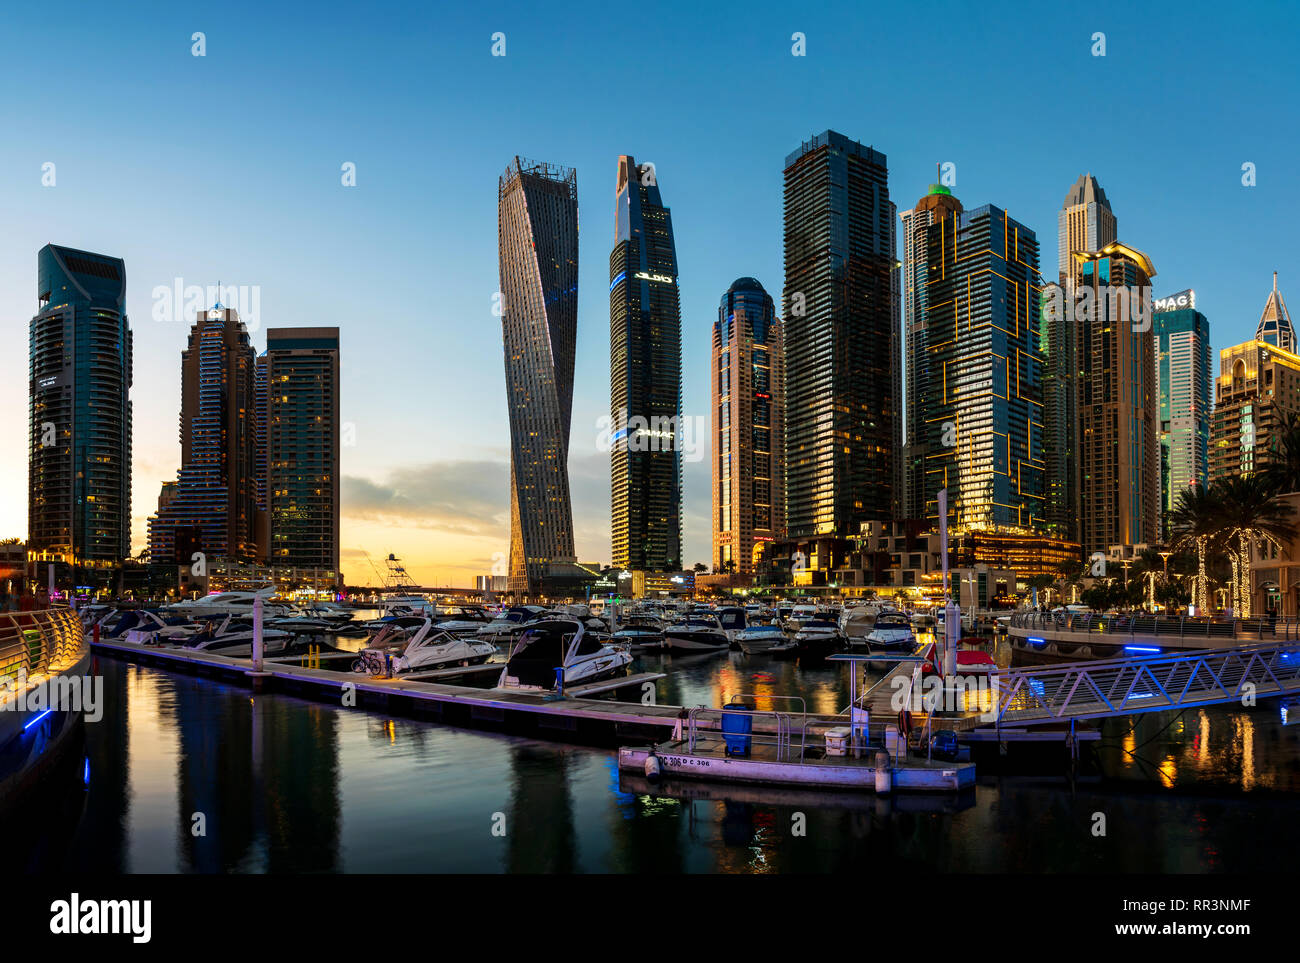 Dubai, Vereinigte Arabische Emirate - Februar 14, 2019: Dubai Marina moderne Szene von Wolkenkratzern und Luxus Yachten bei Sonnenuntergang Stockfoto